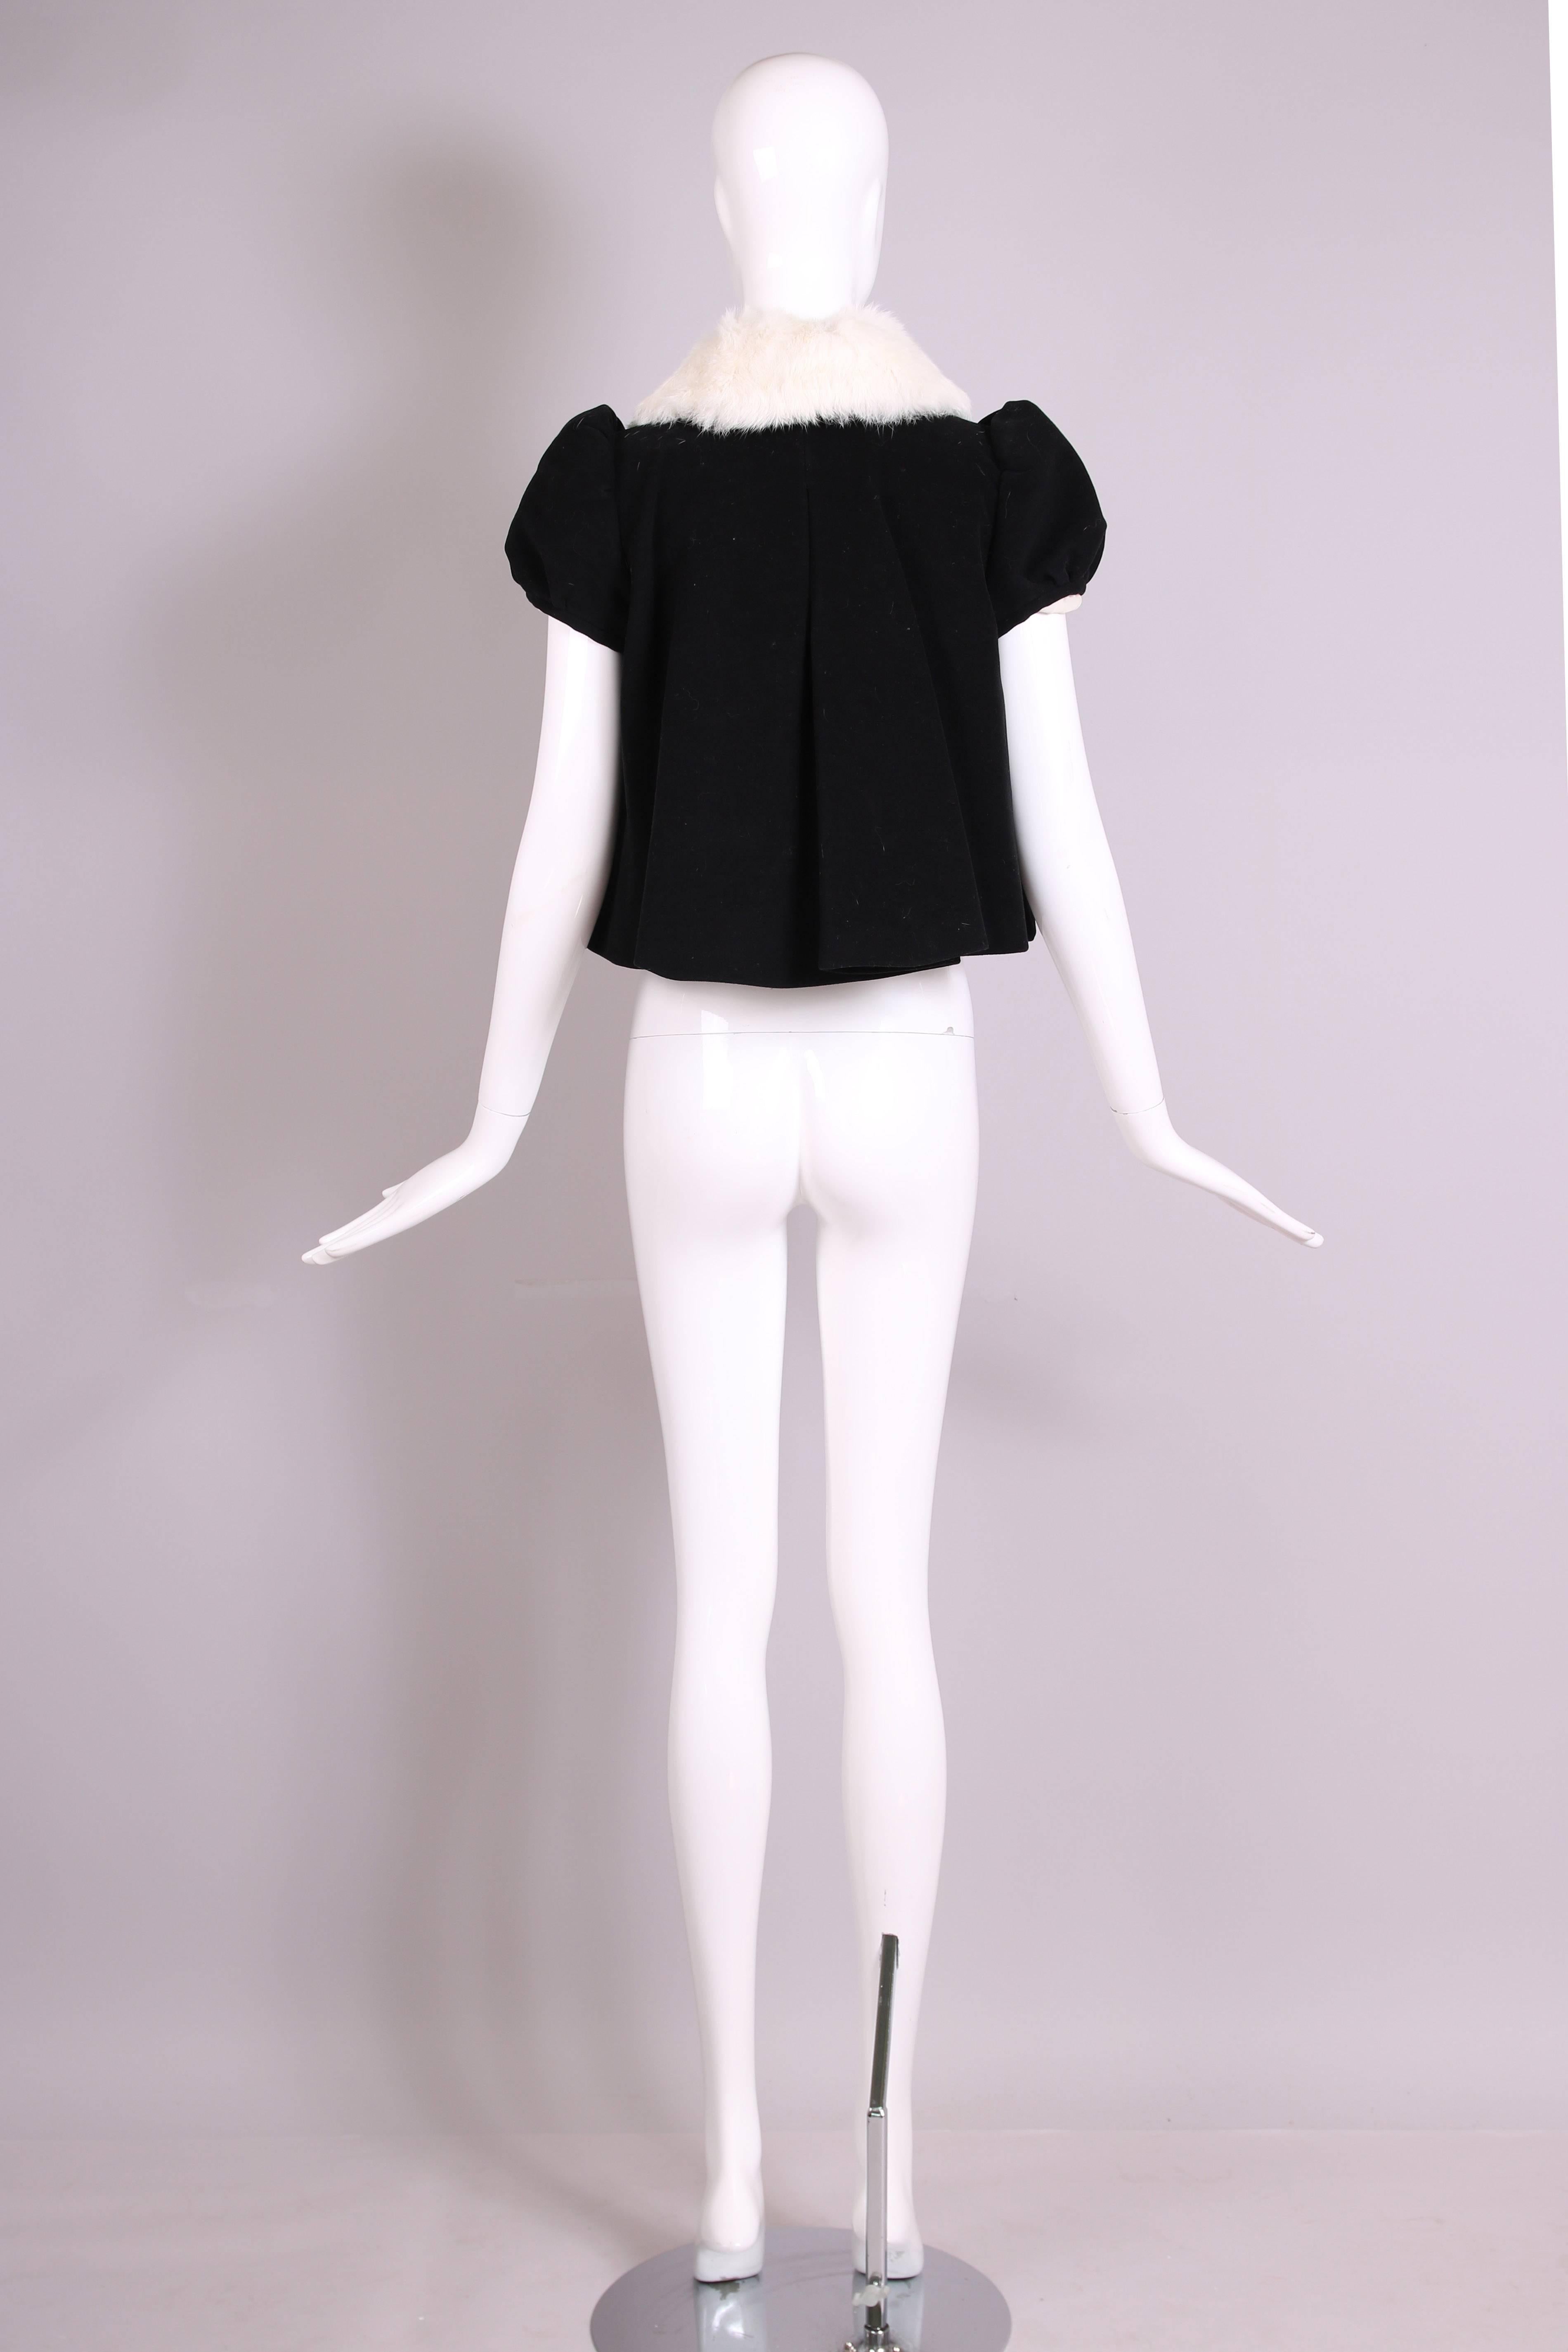 Vintage Jean-Paul Gaultier Black Velvet Jacket Top w/Fur Collar & Neck Ties 1